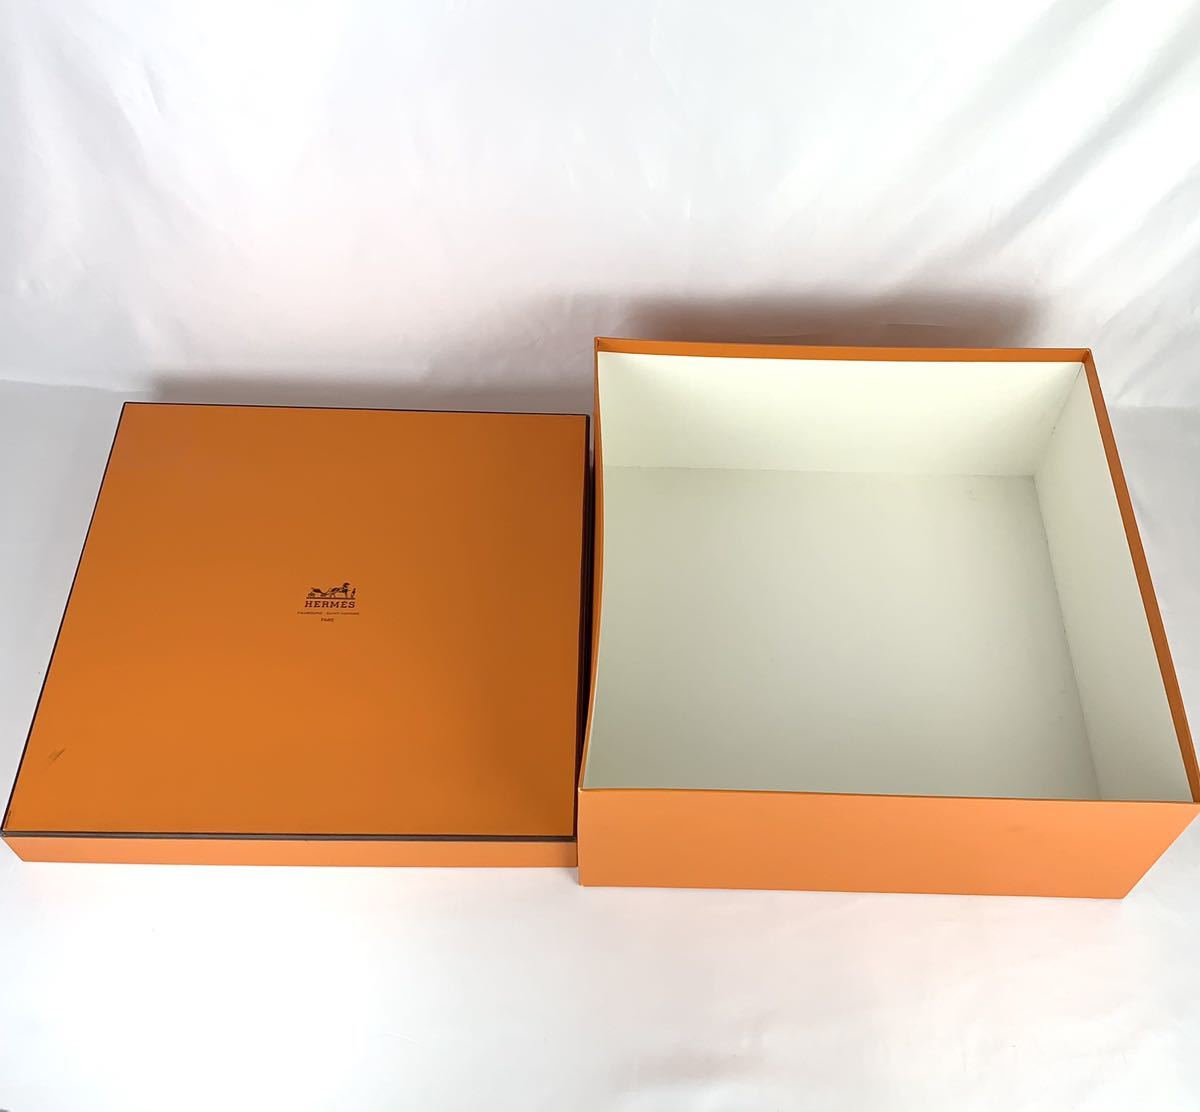 HERMES エルメス 特大 空箱 空き箱 43×43×17.5cm BOX ボックス 化粧箱 大型 オレンジ オレンジボックス バッグ用_画像5